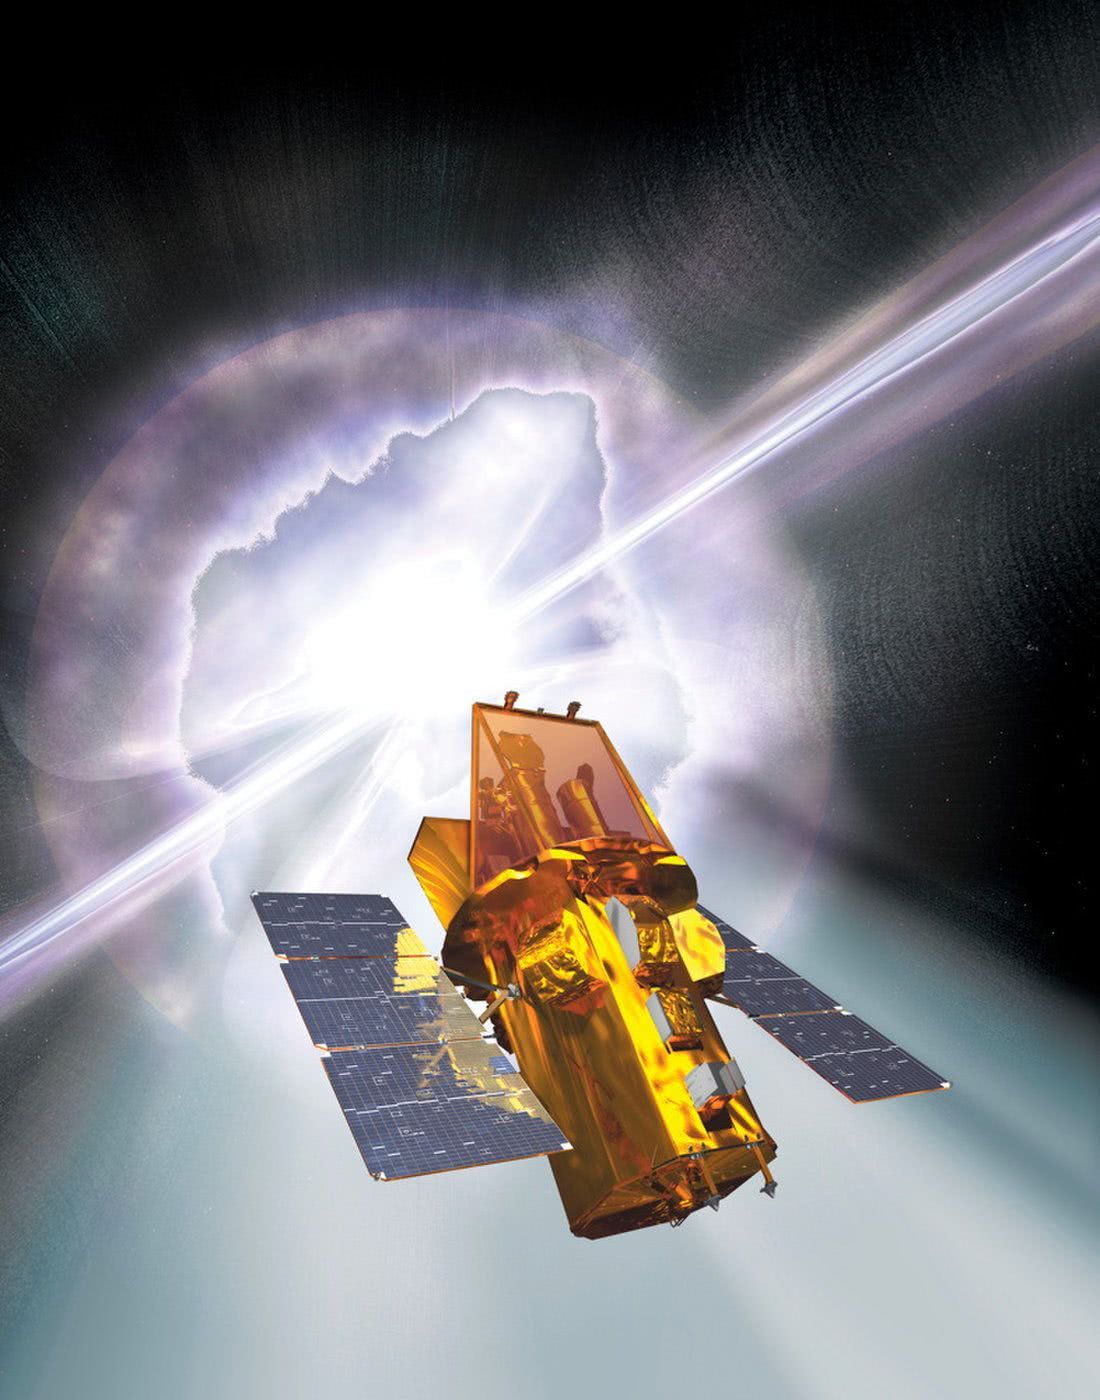 扫描天空中的伽马射线暴 斯威夫特空间天文台厉害了